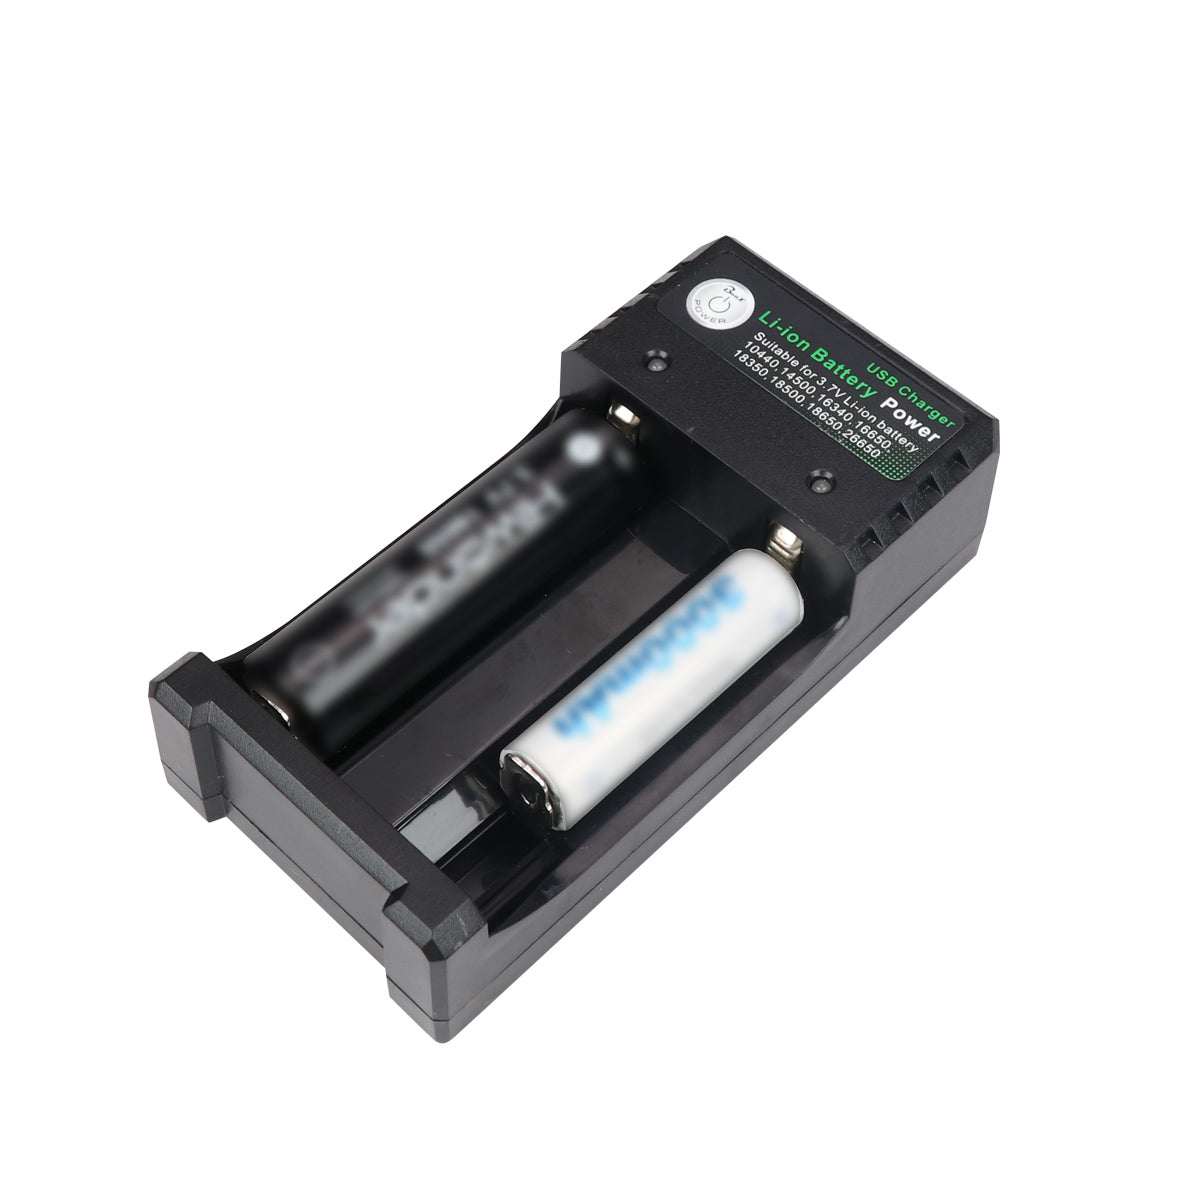 Chargeur de batterie 18650 équipé de 2 sorties USB 5V 1A/2.1A